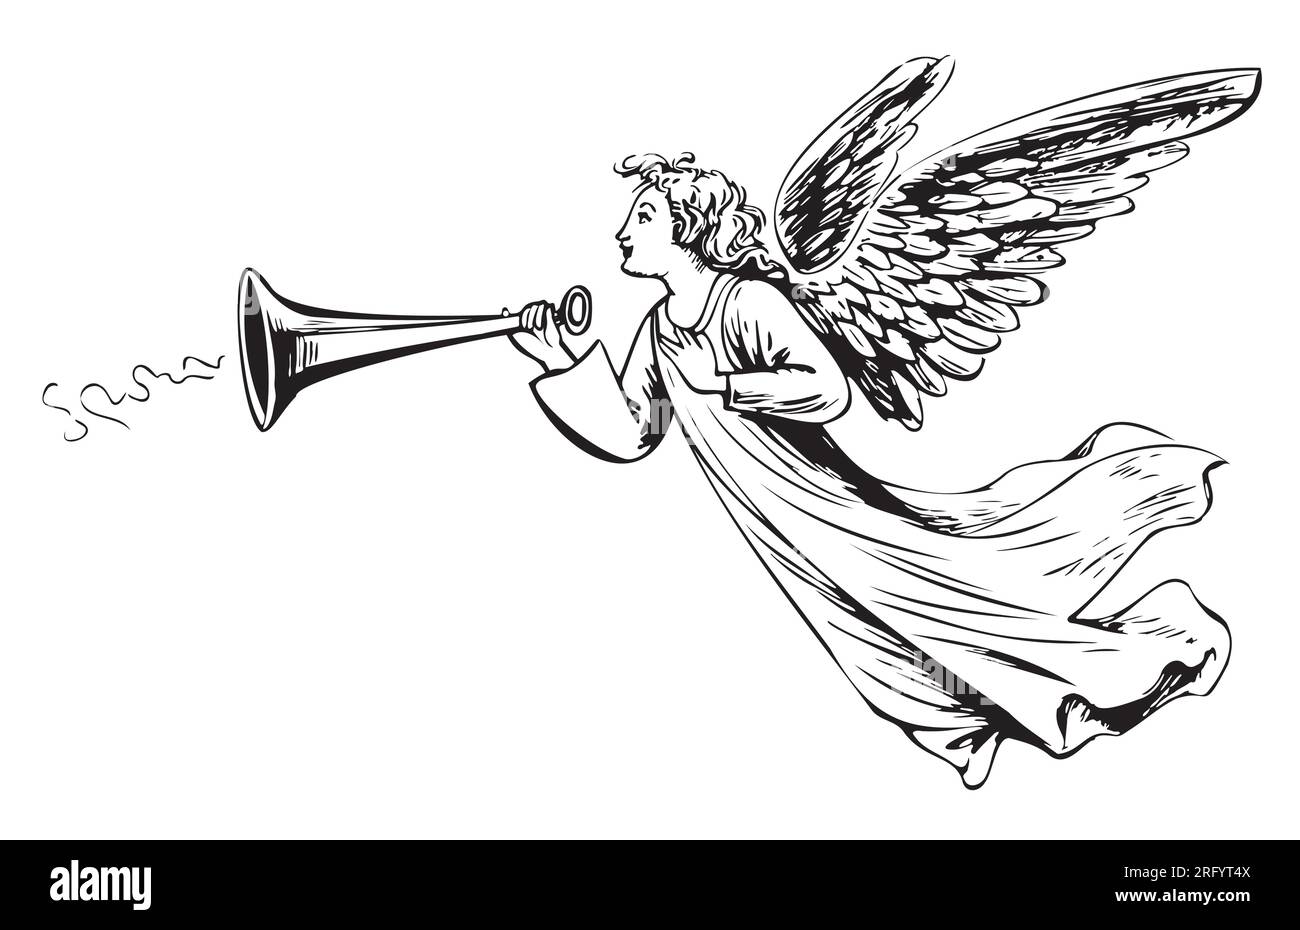 Ange avec des ailes soufflant l'air esquisse dessinée à la main dans le style doodle Illustration de Vecteur